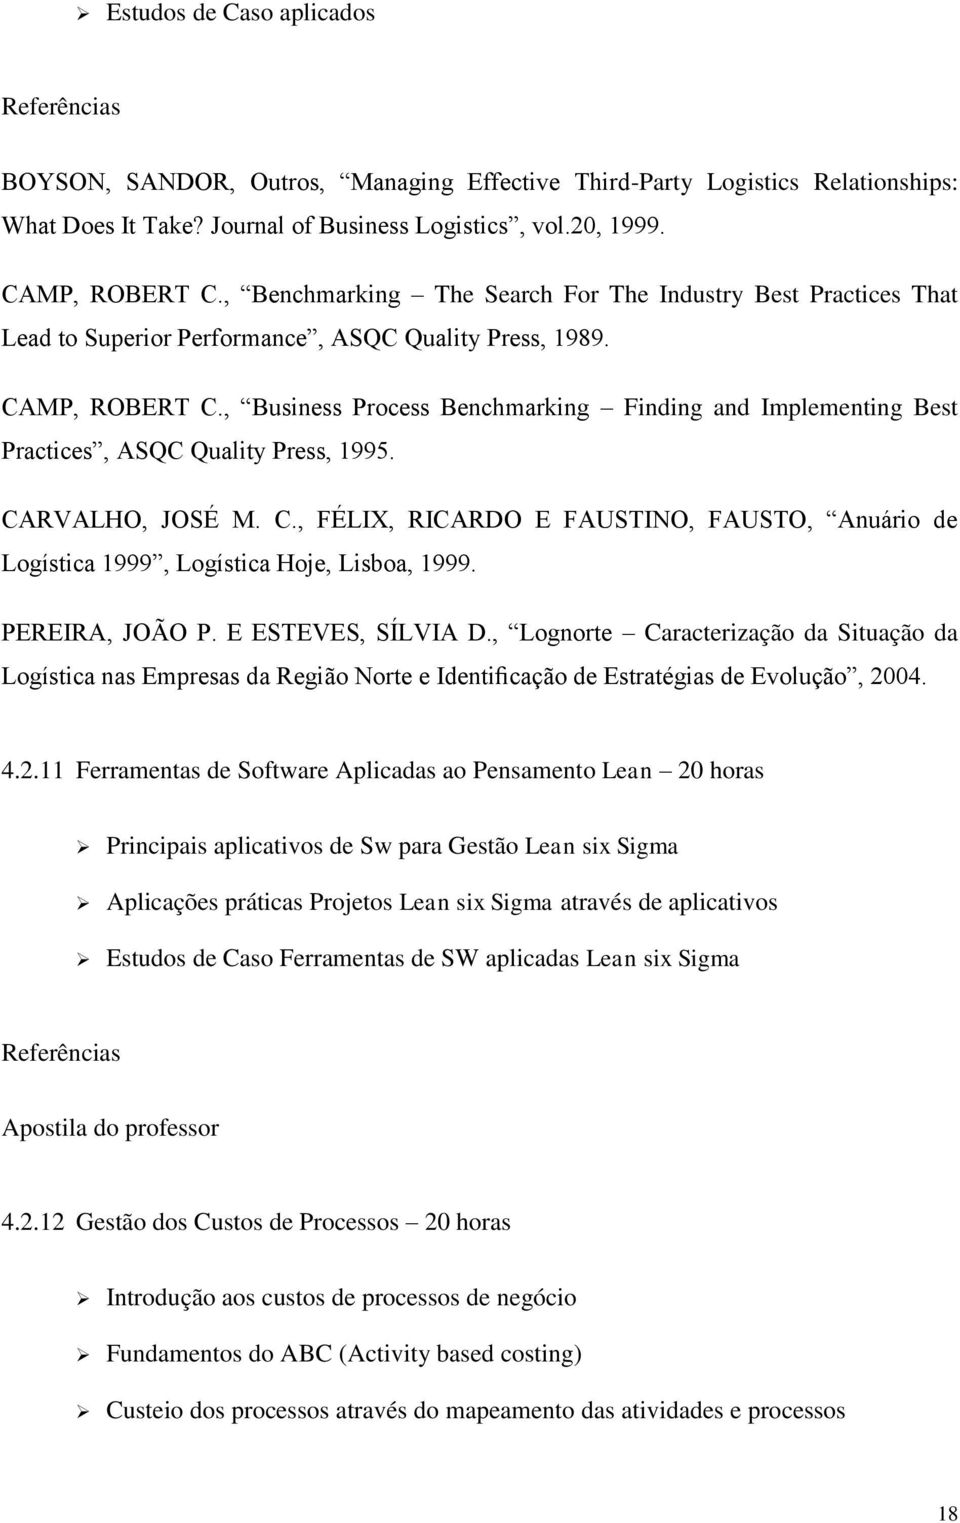 , Business Process Benchmarking Finding and Implementing Best Practices, ASQC Quality Press, 1995. CARVALHO, JOSÉ M. C., FÉLIX, RICARDO E FAUSTINO, FAUSTO, Anuário de Logística 1999, Logística Hoje, Lisboa, 1999.